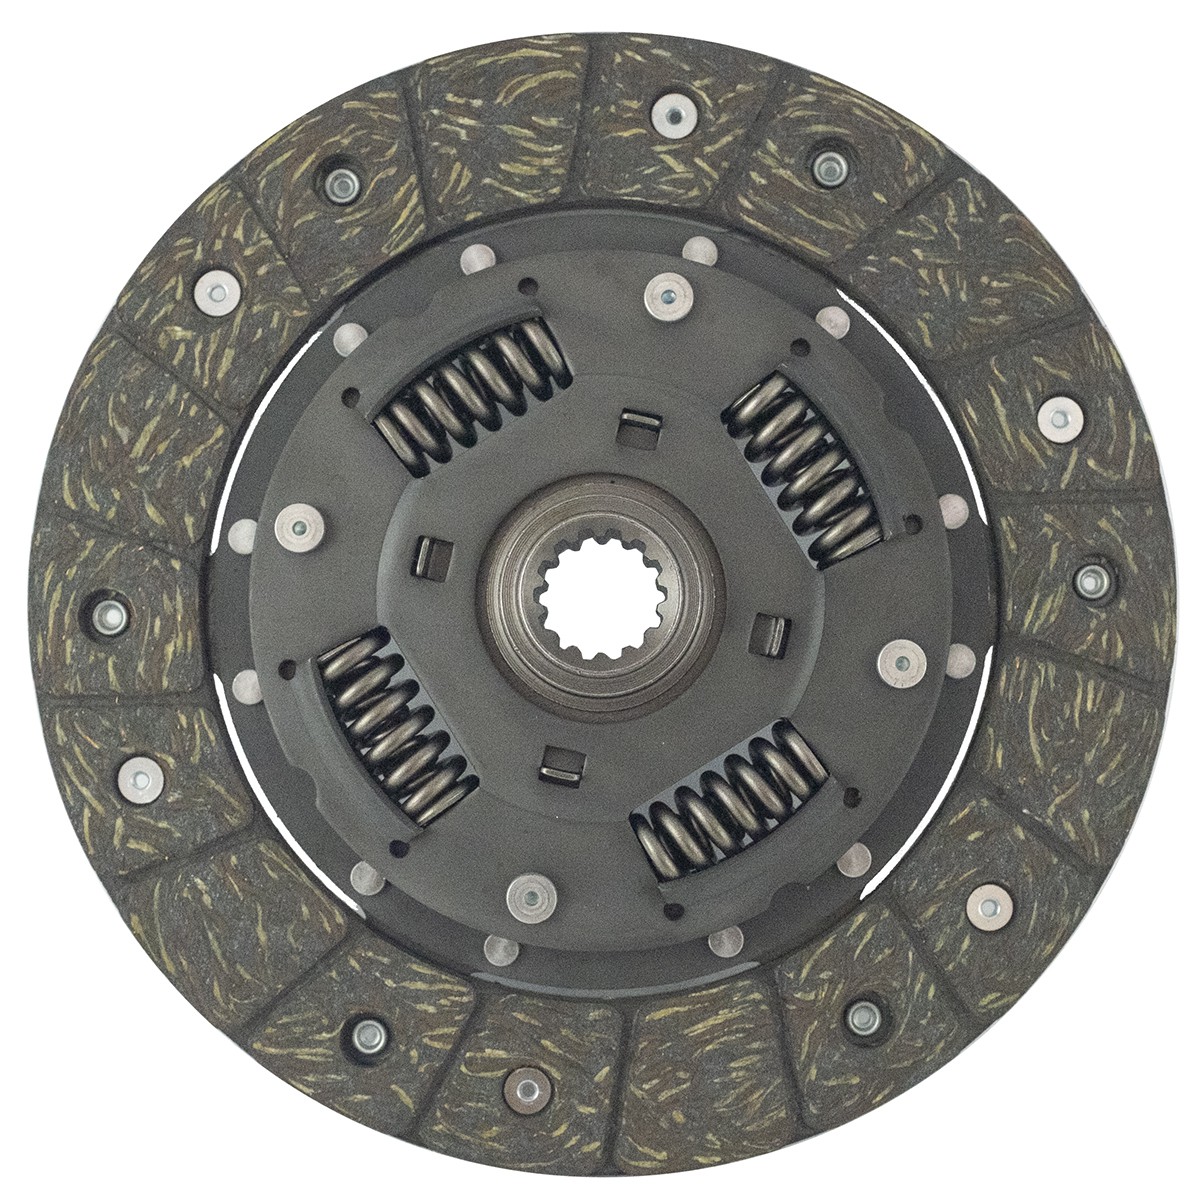 Clutch disc Kubota 14T, 183 mm, Kubota Β6000, B7100, B1200-1500, ΧΒ1, B1750